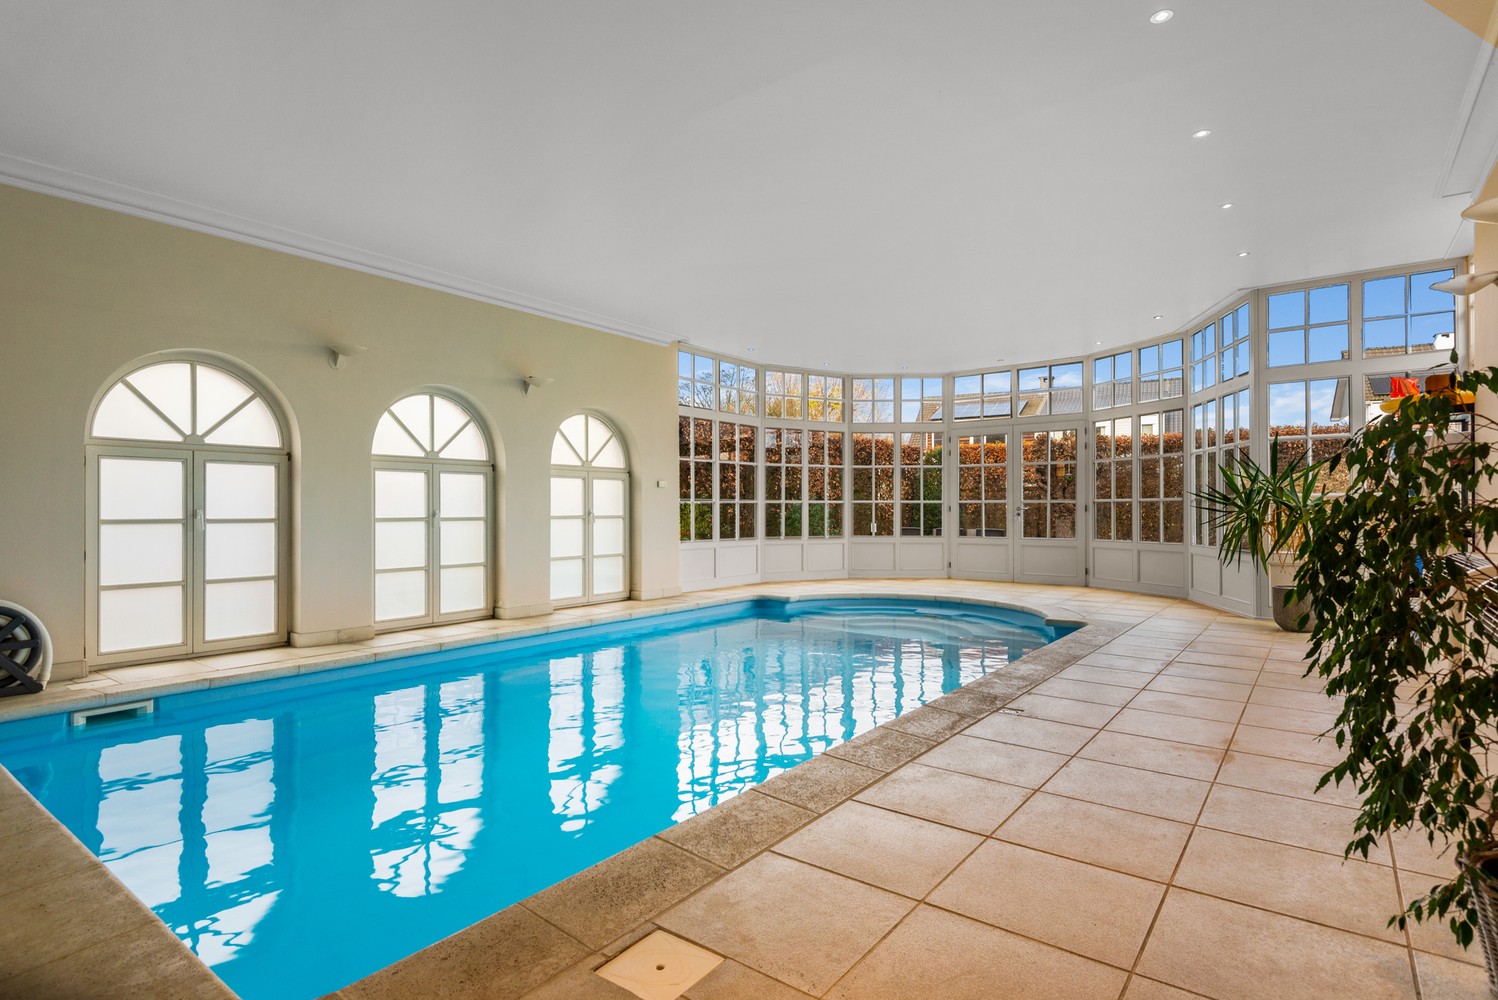 Prachtige villa met binnenzwembad op een perceel van ± 910m² in Wijnegem! afbeelding 2